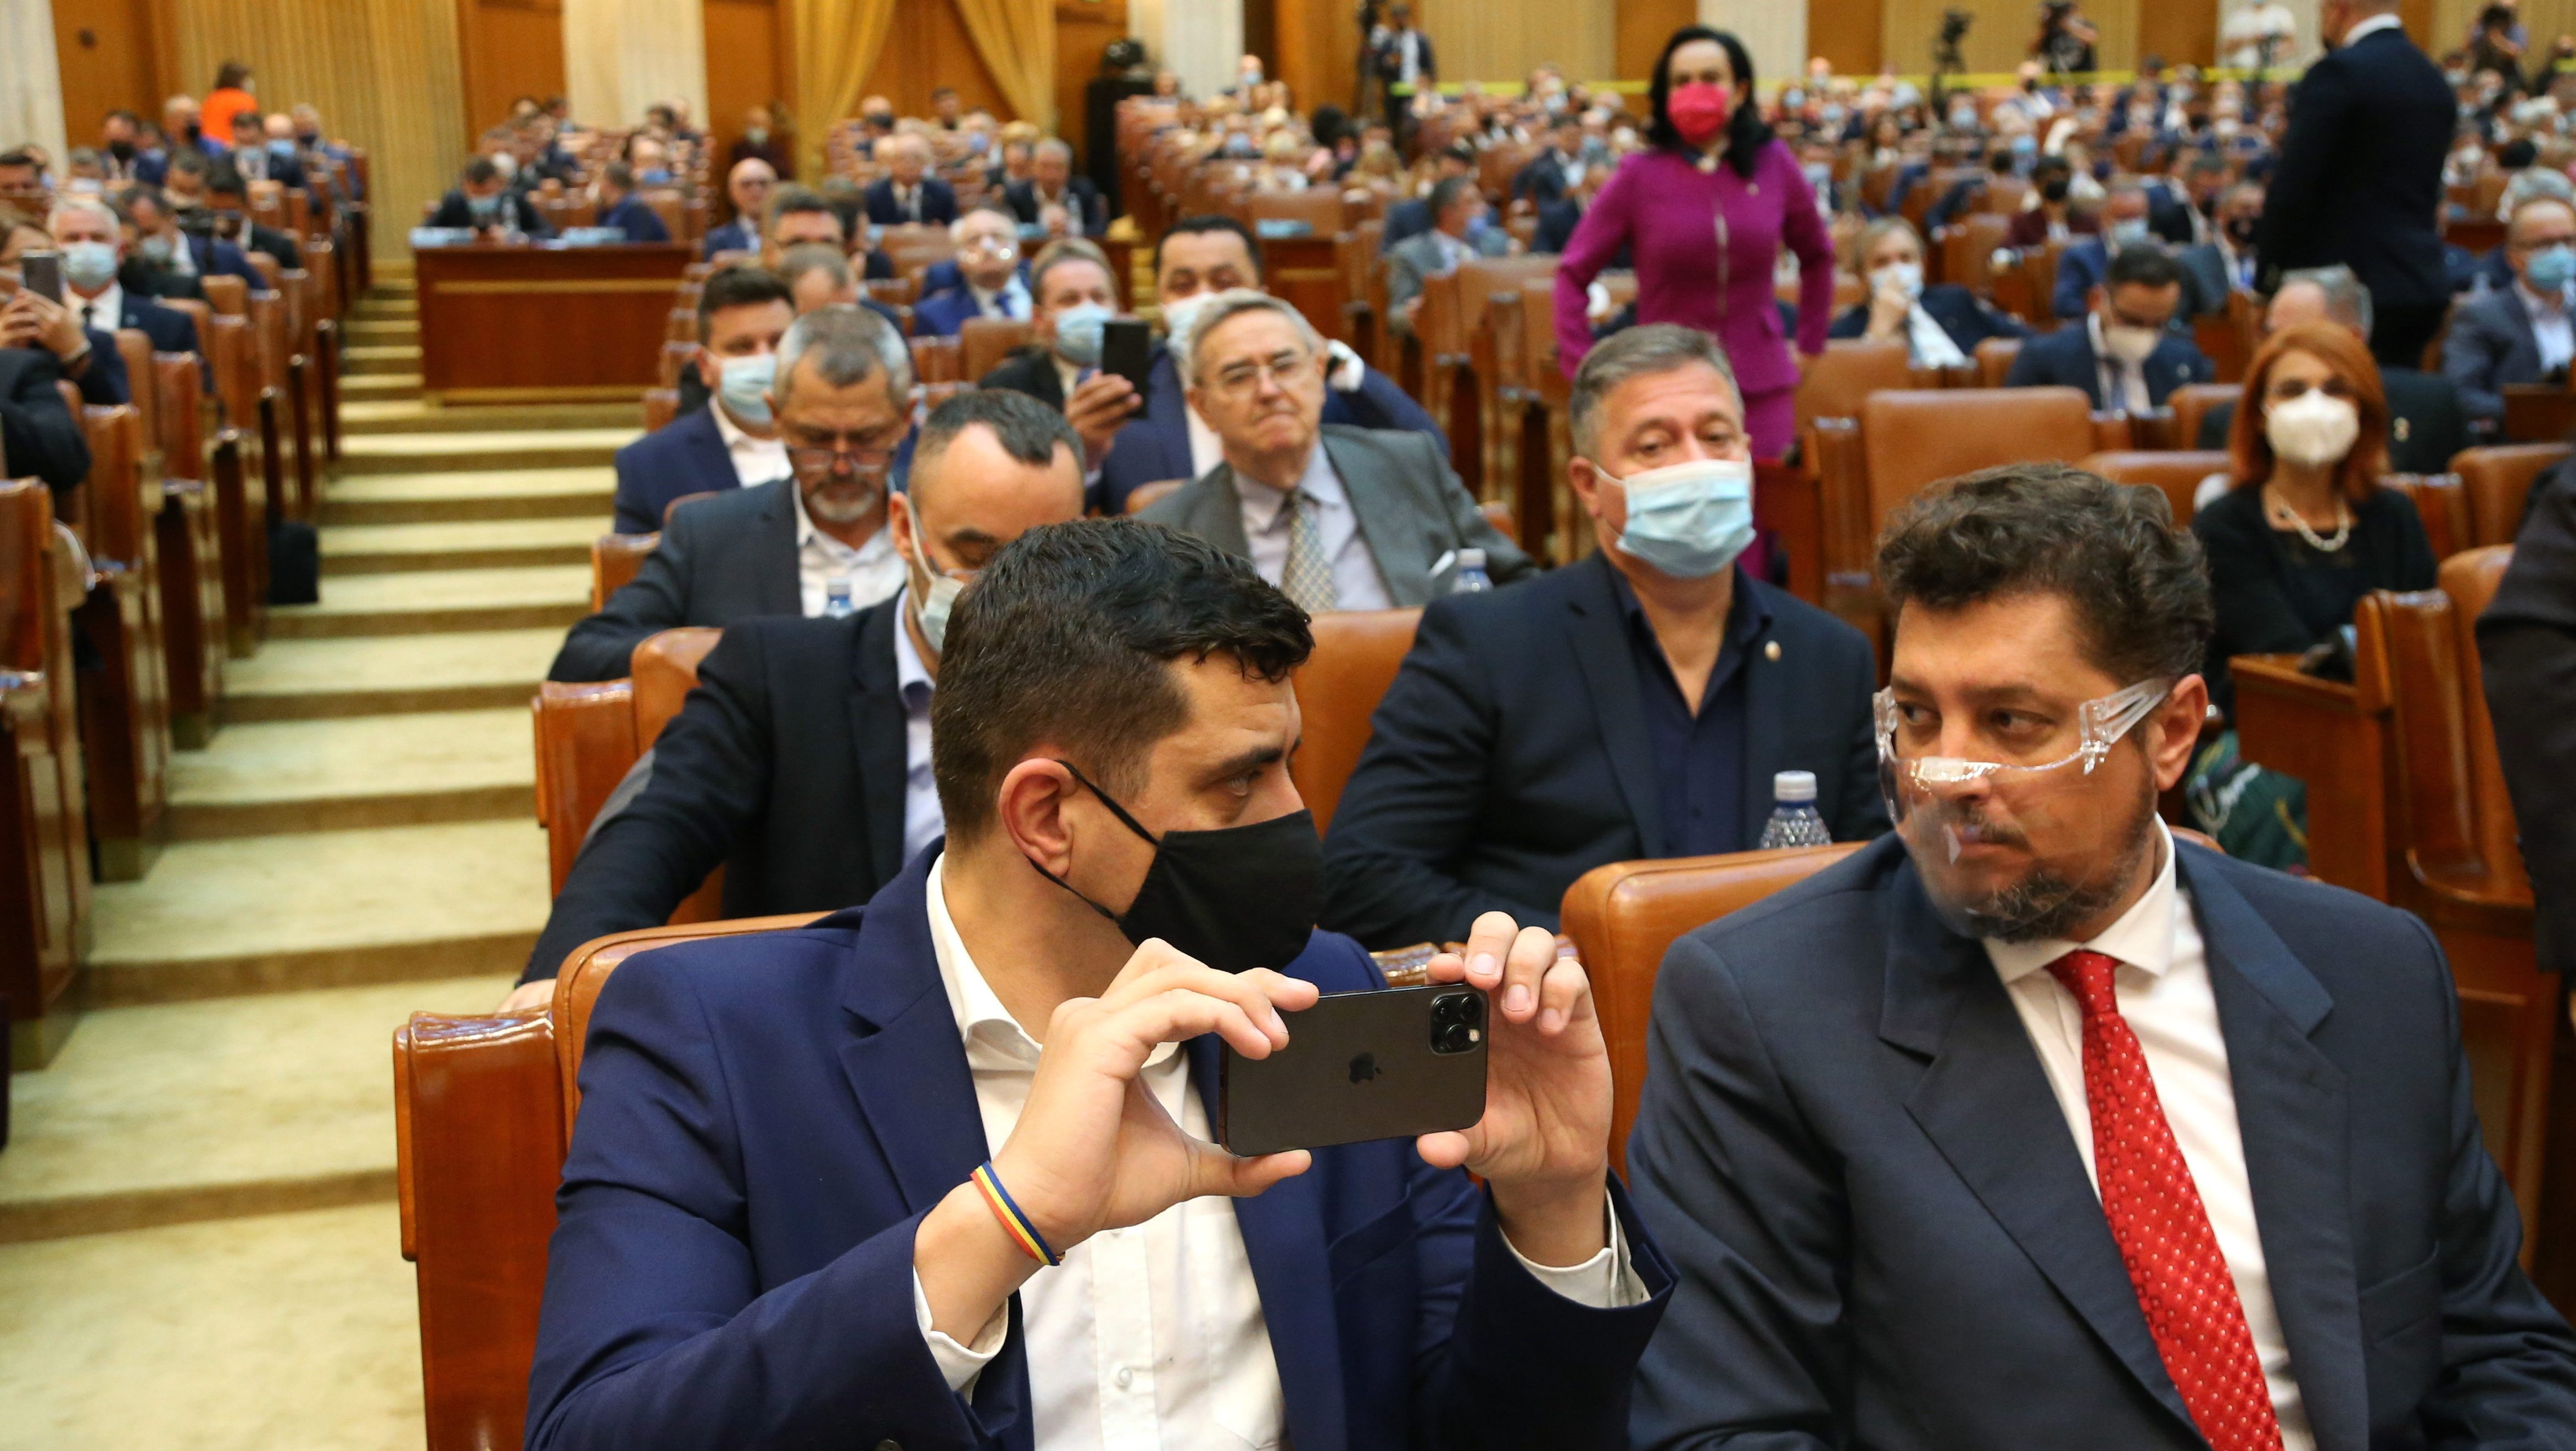 A szélsőséges AUR vezetője megrángatott és letolvajozott egy minisztert a román parlamentben